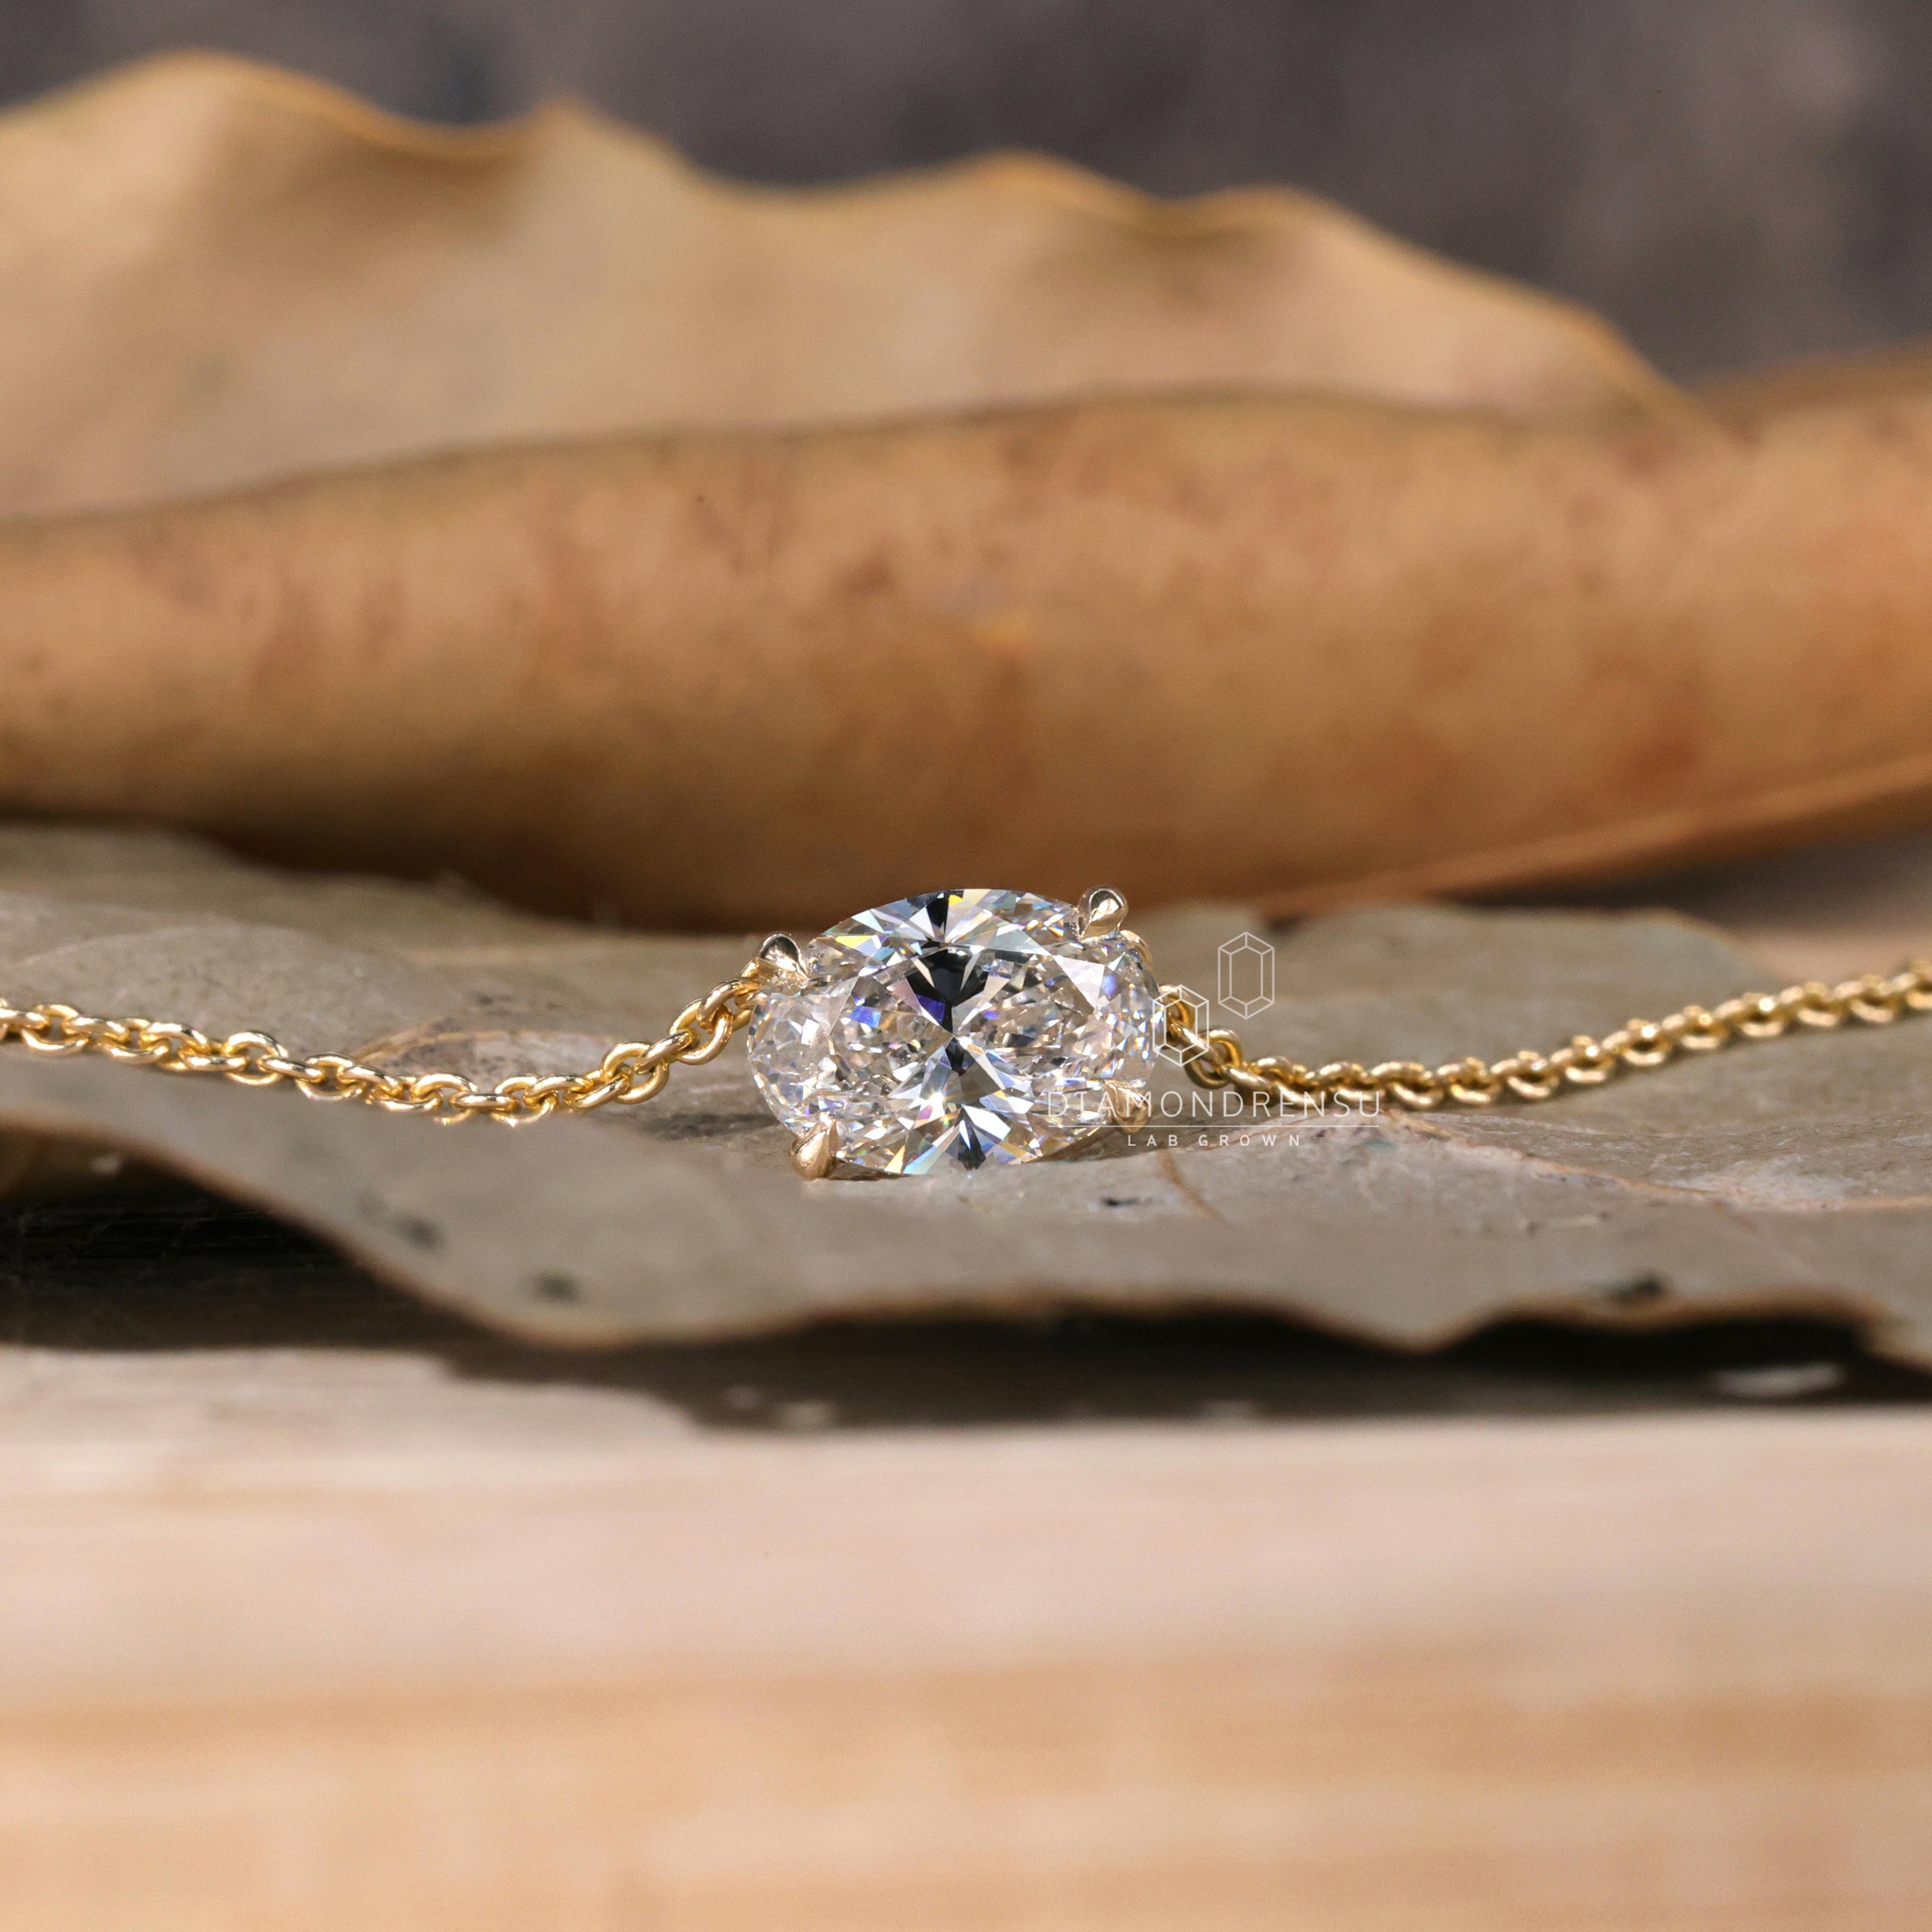 50+ Bridal Diamond Jewellery Set Images - Latest Designs